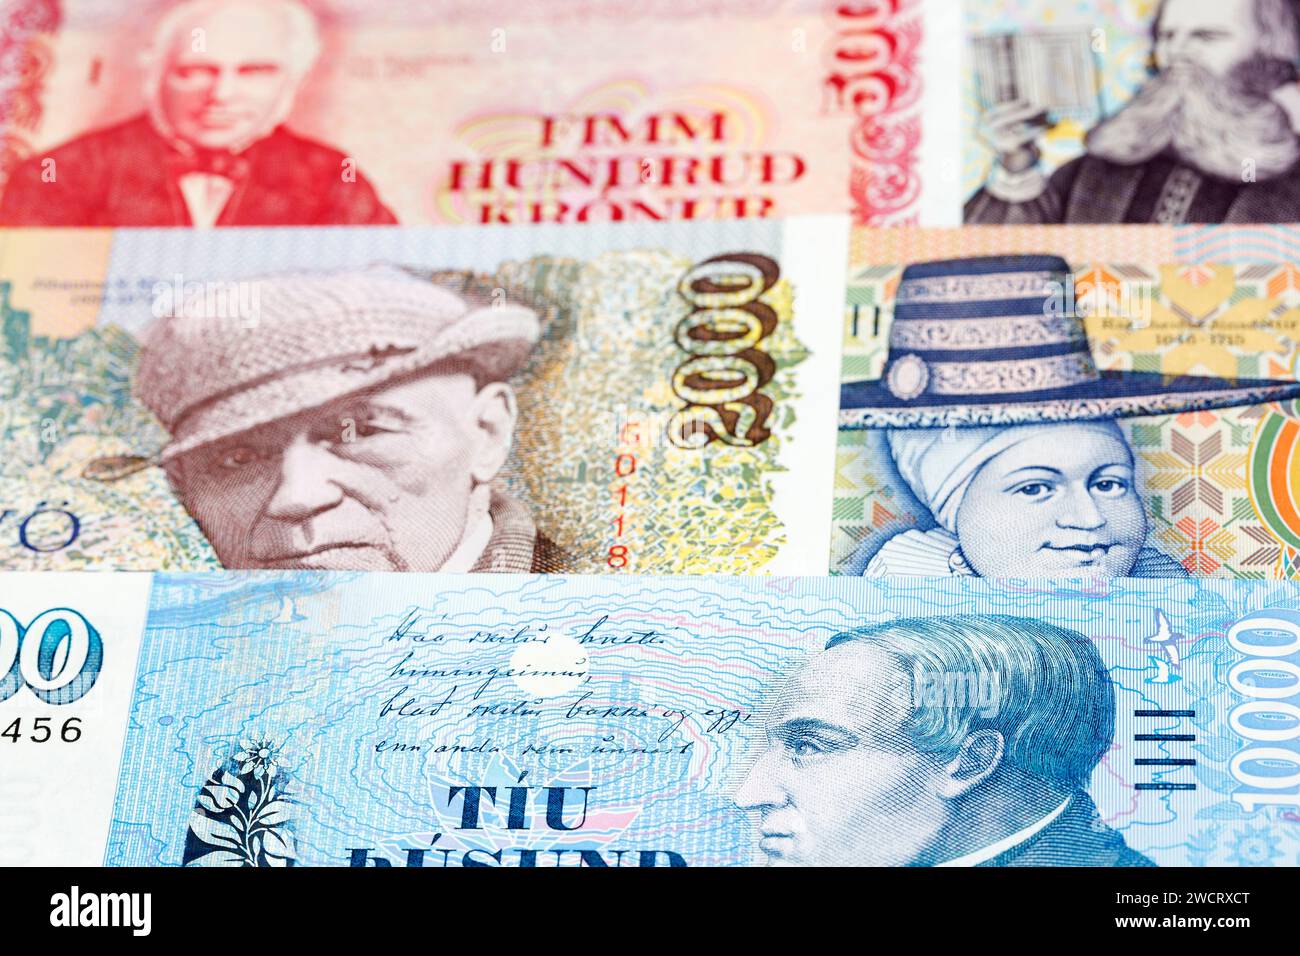 Icelandic Money - krona un contexte d'affaires Banque D'Images